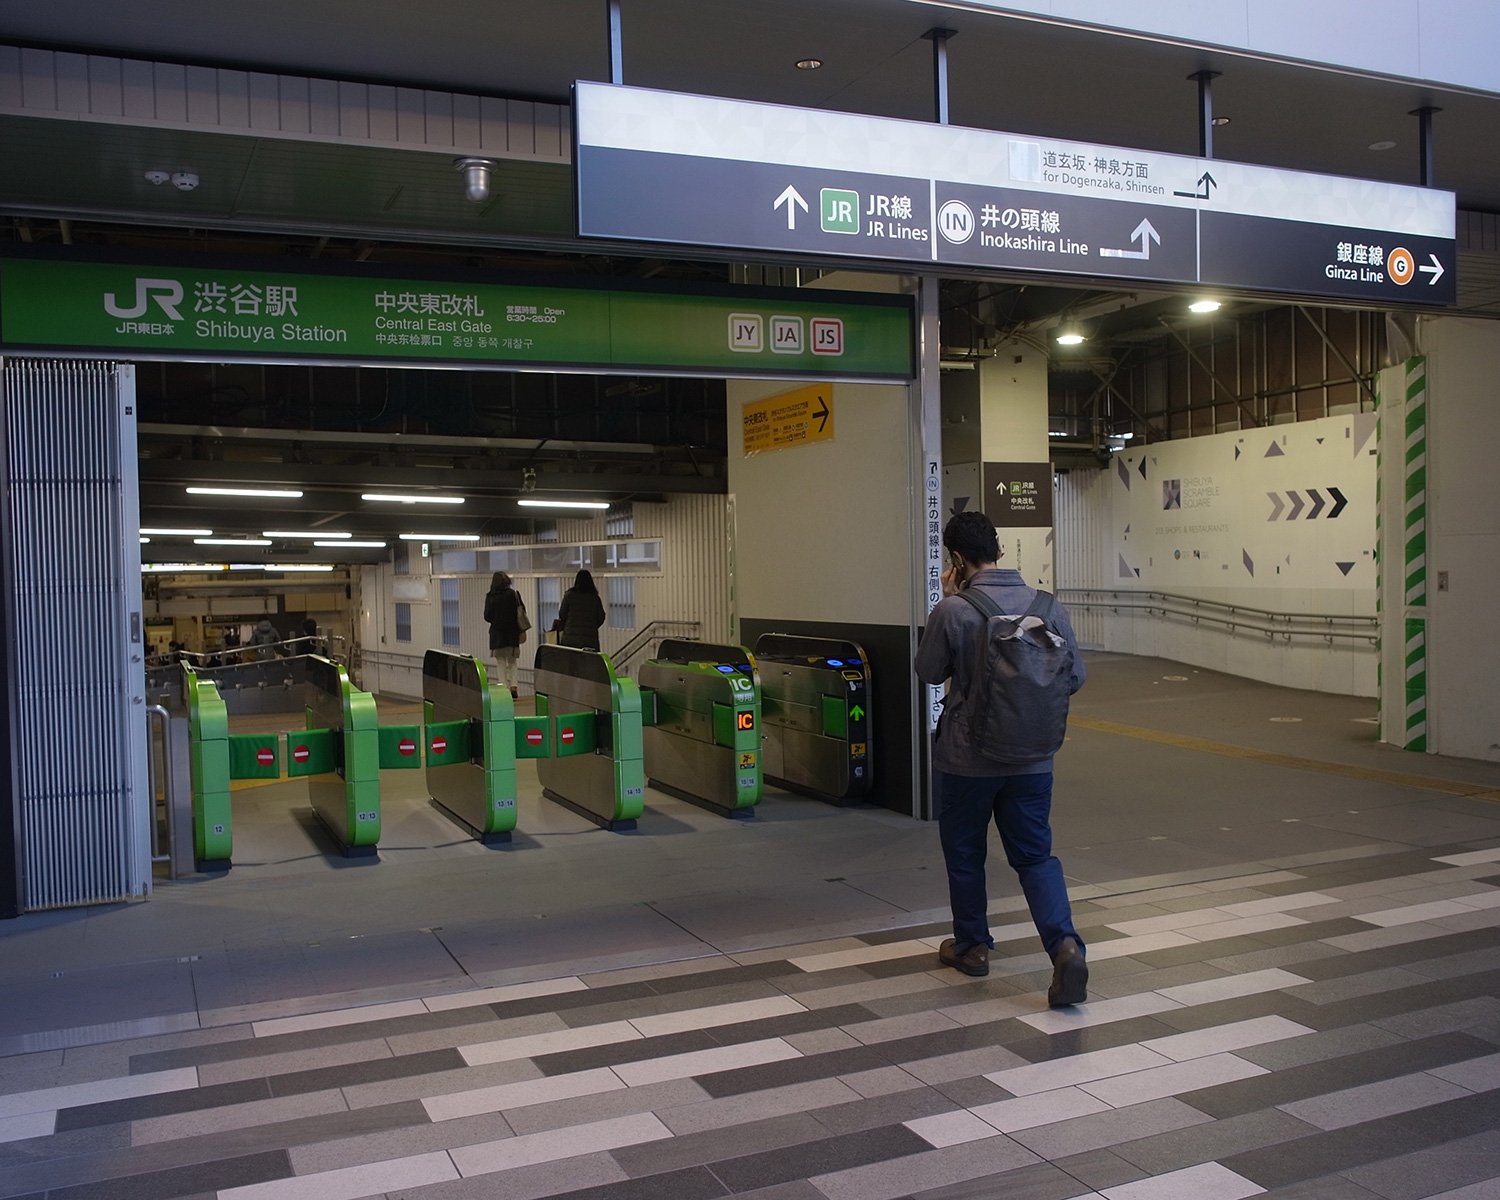 中央東改札付近は渋谷の新たな街並みも一望できる。銀座線も間近。